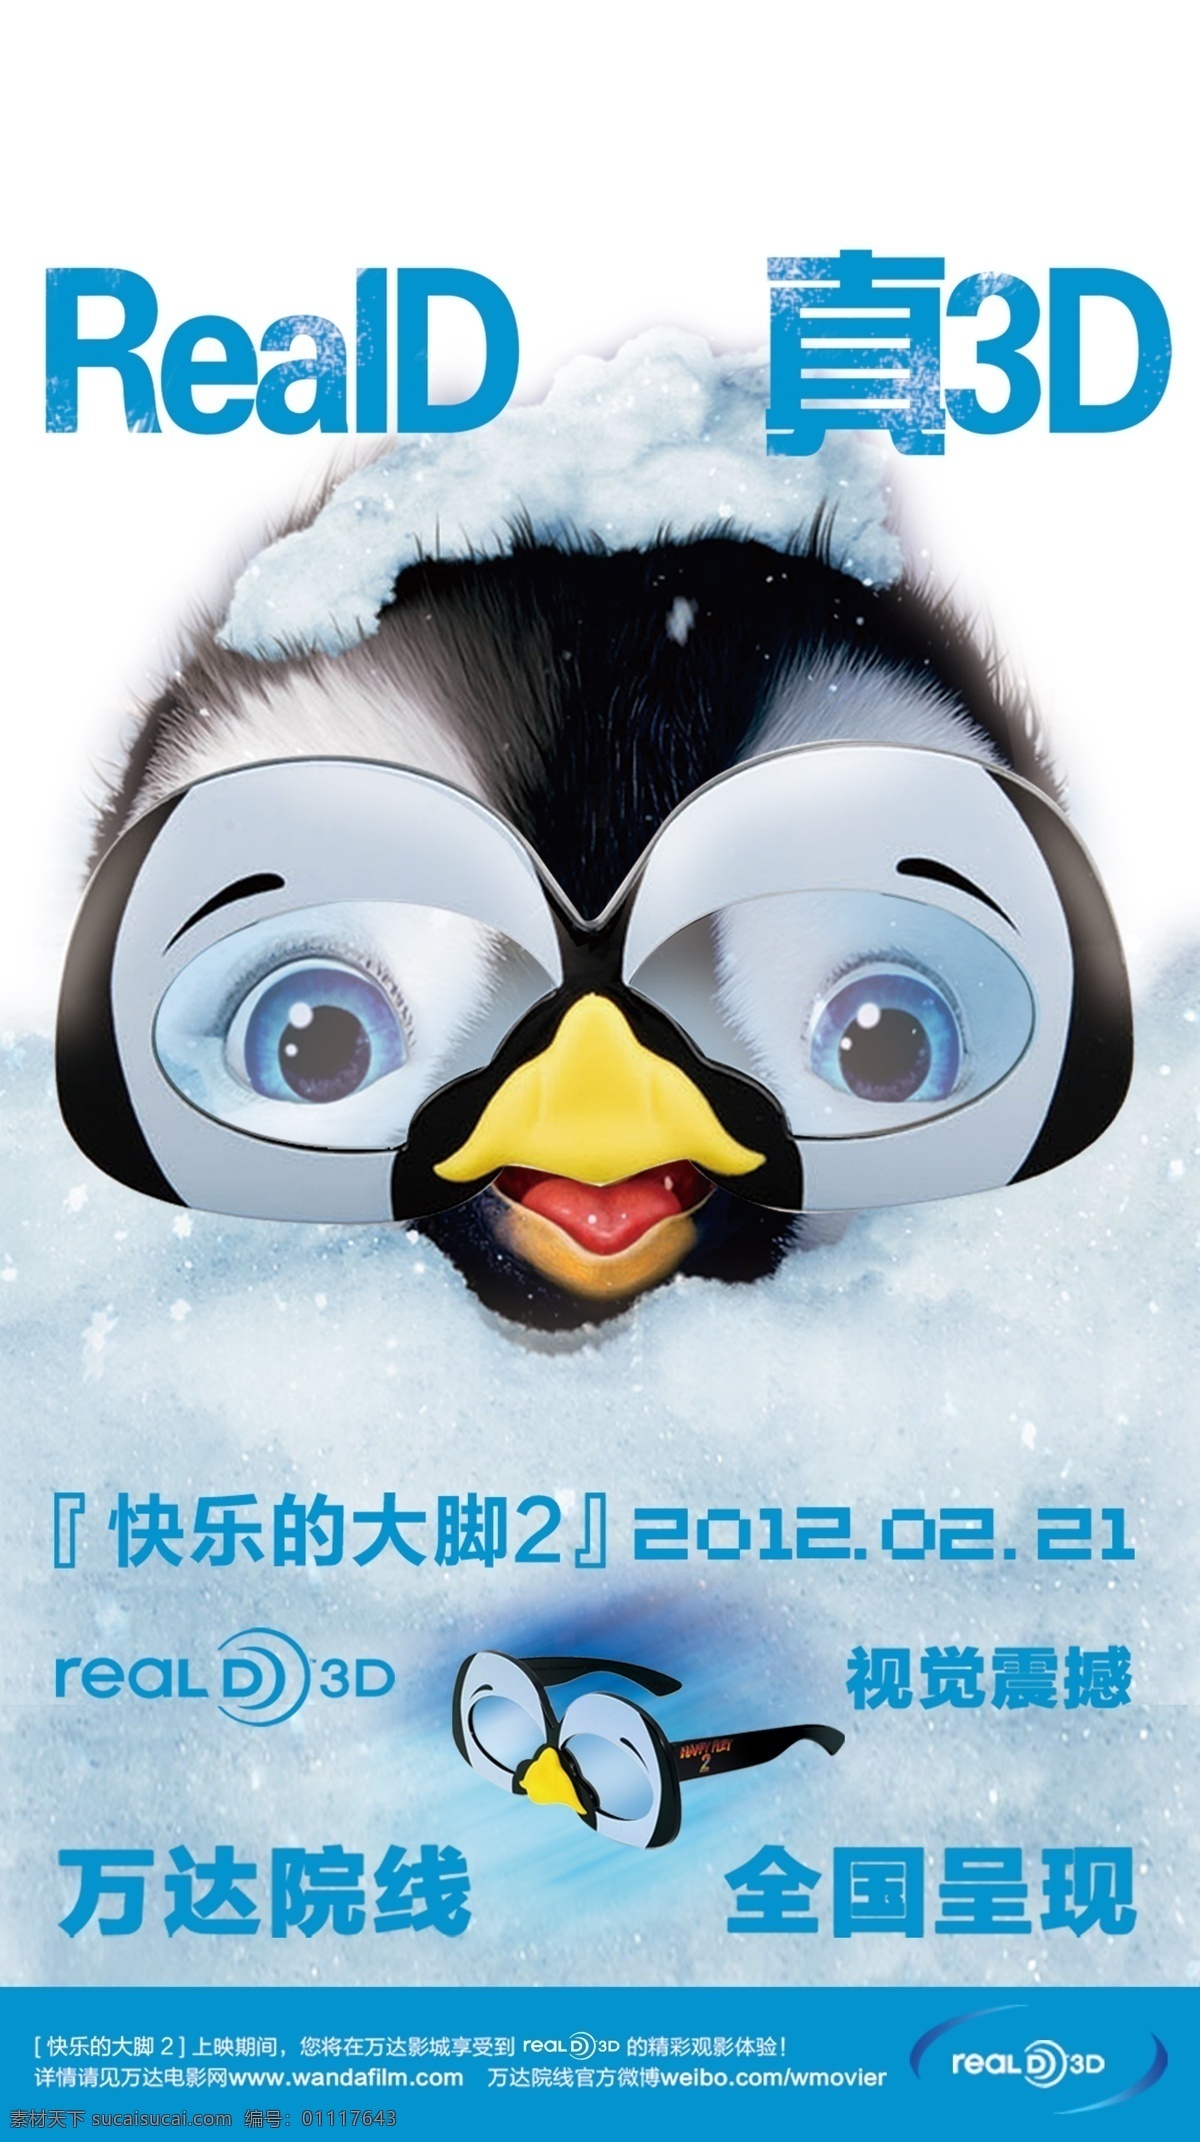 快乐 大脚 3d 海报 快乐的大脚 reald 真3d海报 真3d 眼睛 企鹅 广告设计模板 源文件 分层 红色